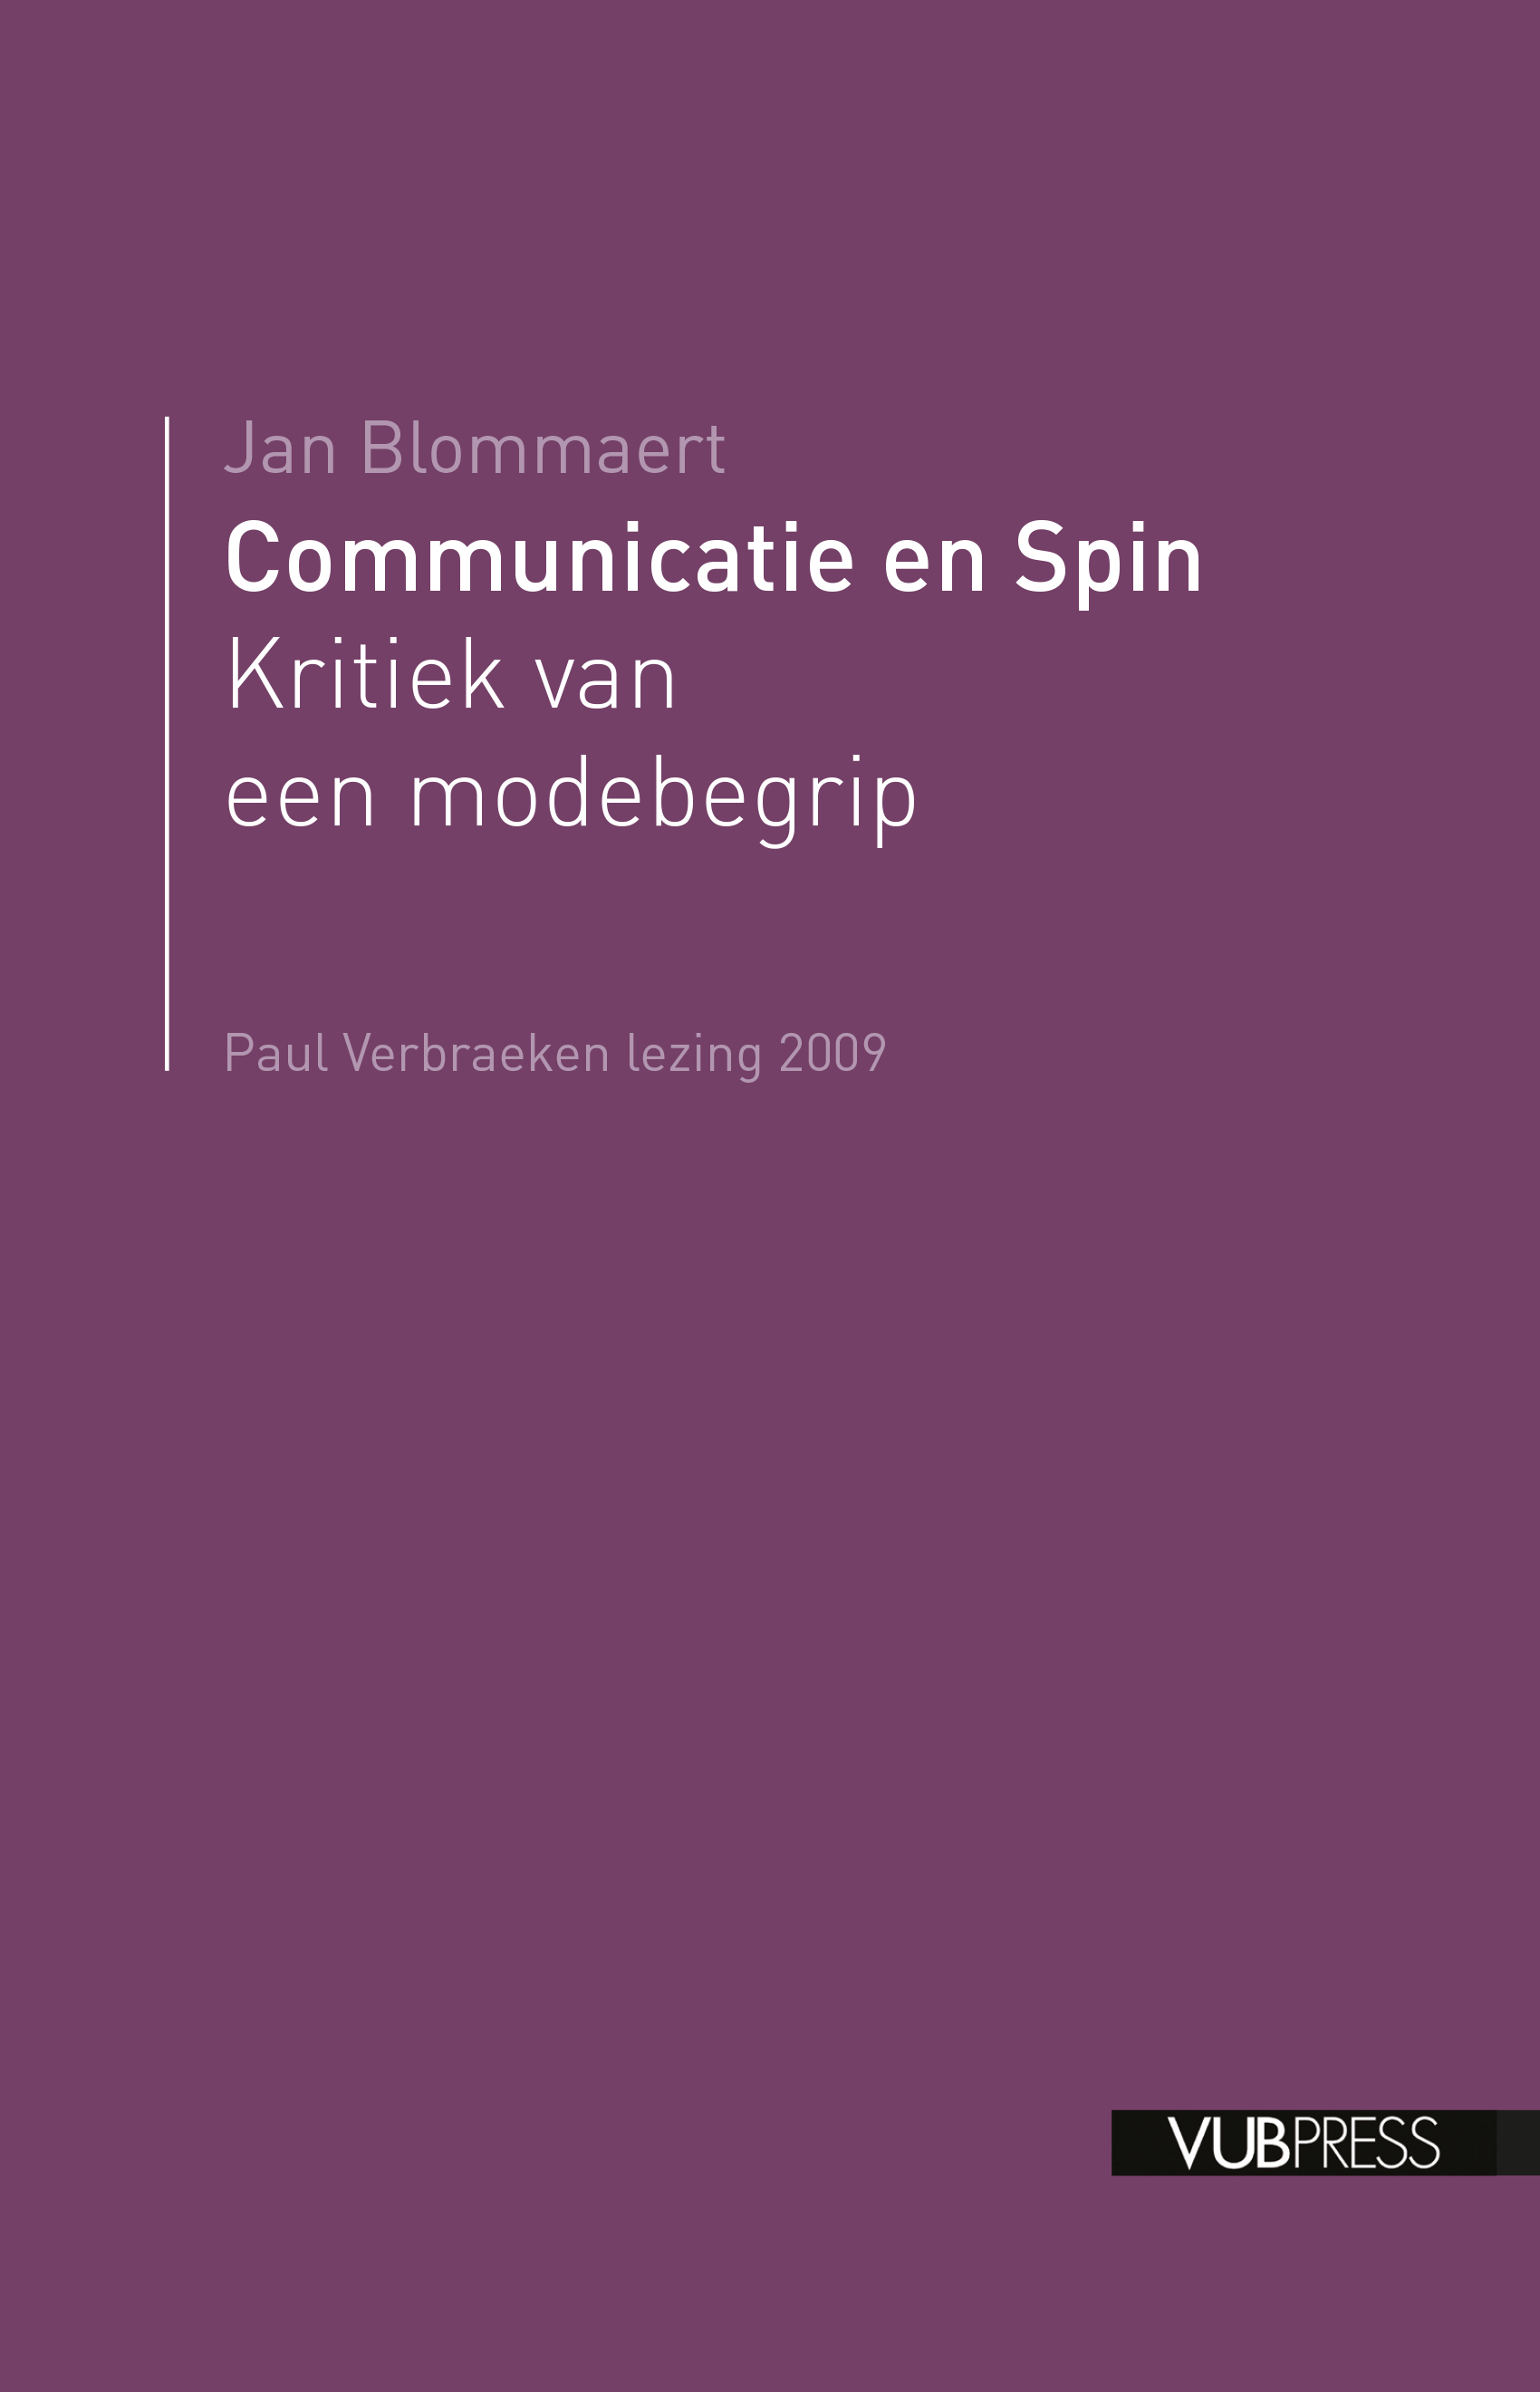 COMMUNICATIE EN SPIN (Paul Verbraekenlezing 2009)